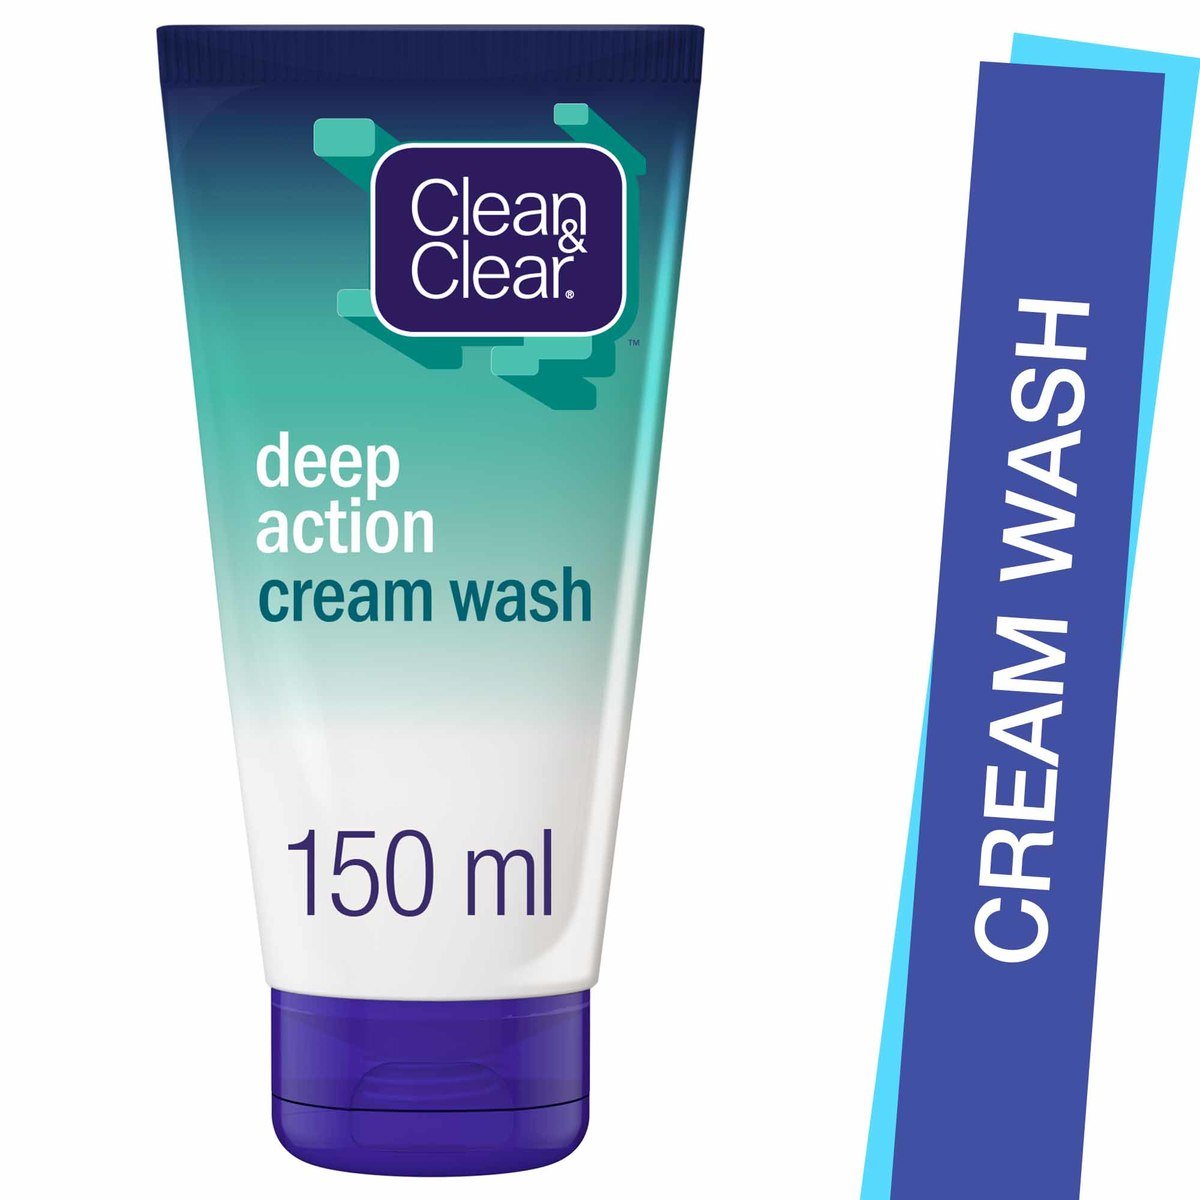 Clean & Clear Cream Wash Deep Action, 150 ml